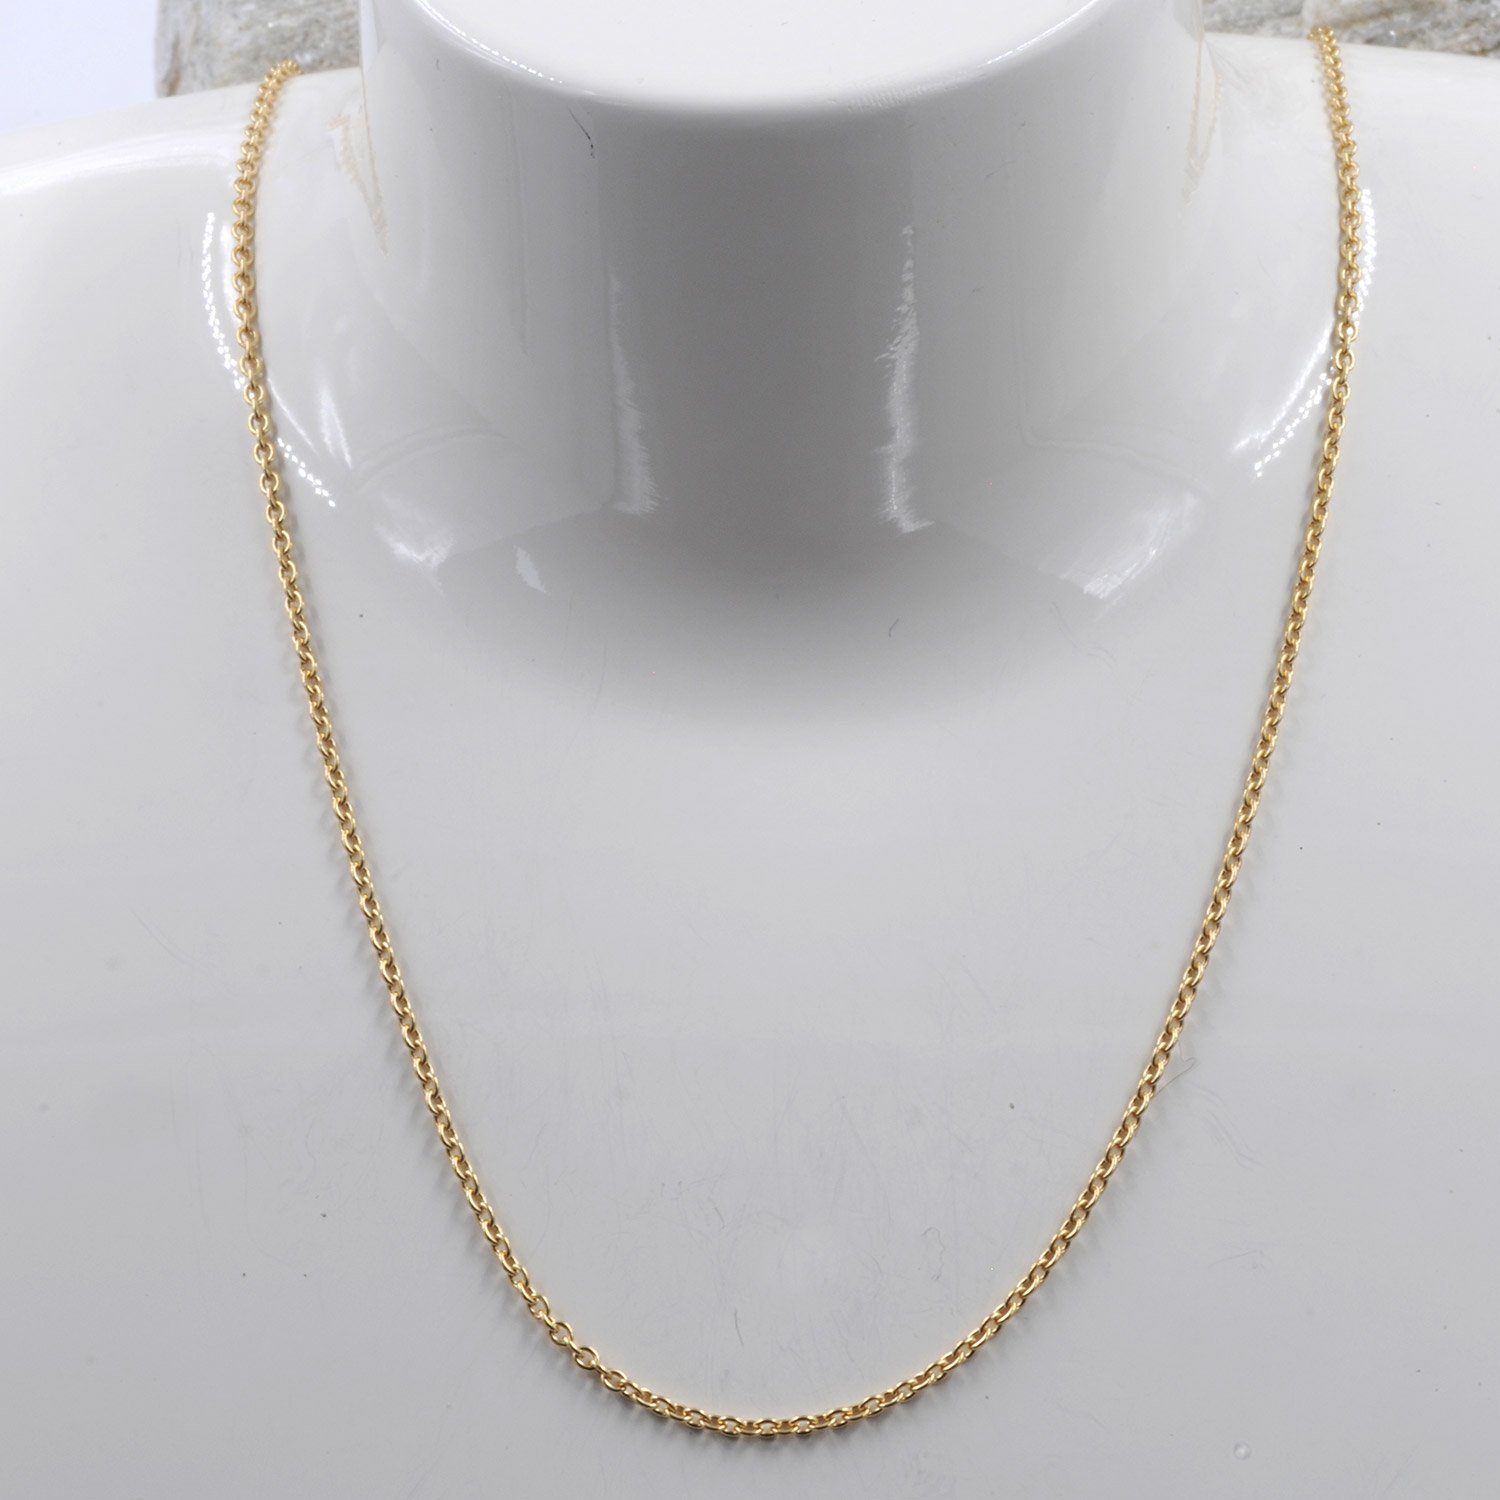 Herren Schmuck HOPLO Goldkette 1,5 mm 70 cm 750 - 18 Karat Gold Halskette Ankerkette rund massiv Gold hochwertige Goldkette 5,6 